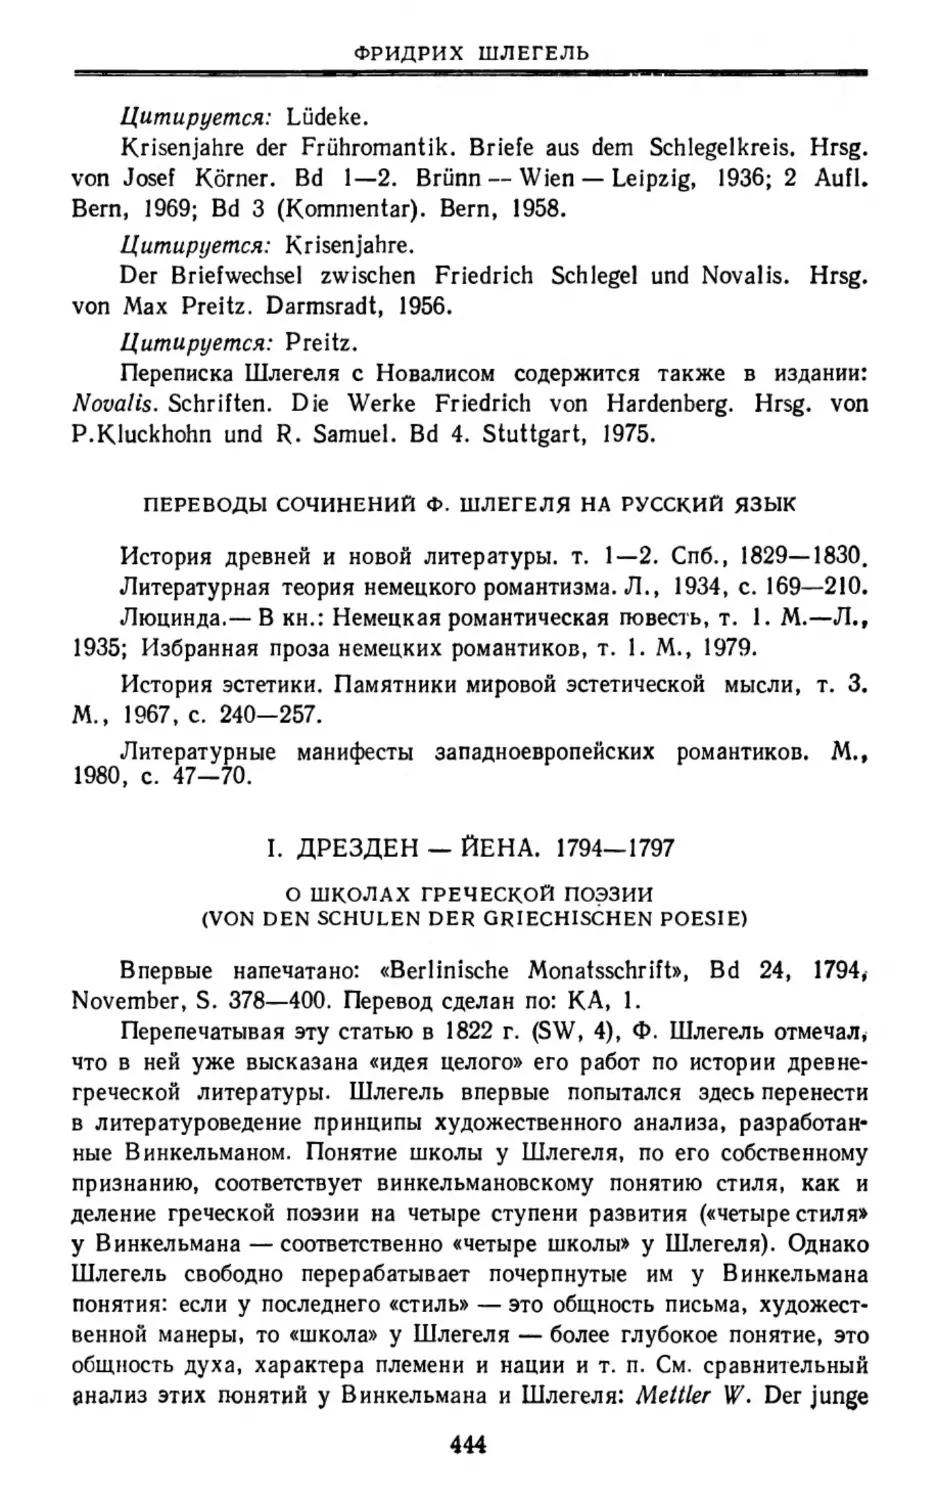 Переводы сочинений Ф. Шлегеля на русский язык
I. Дрезден — Йена. 1794—1797